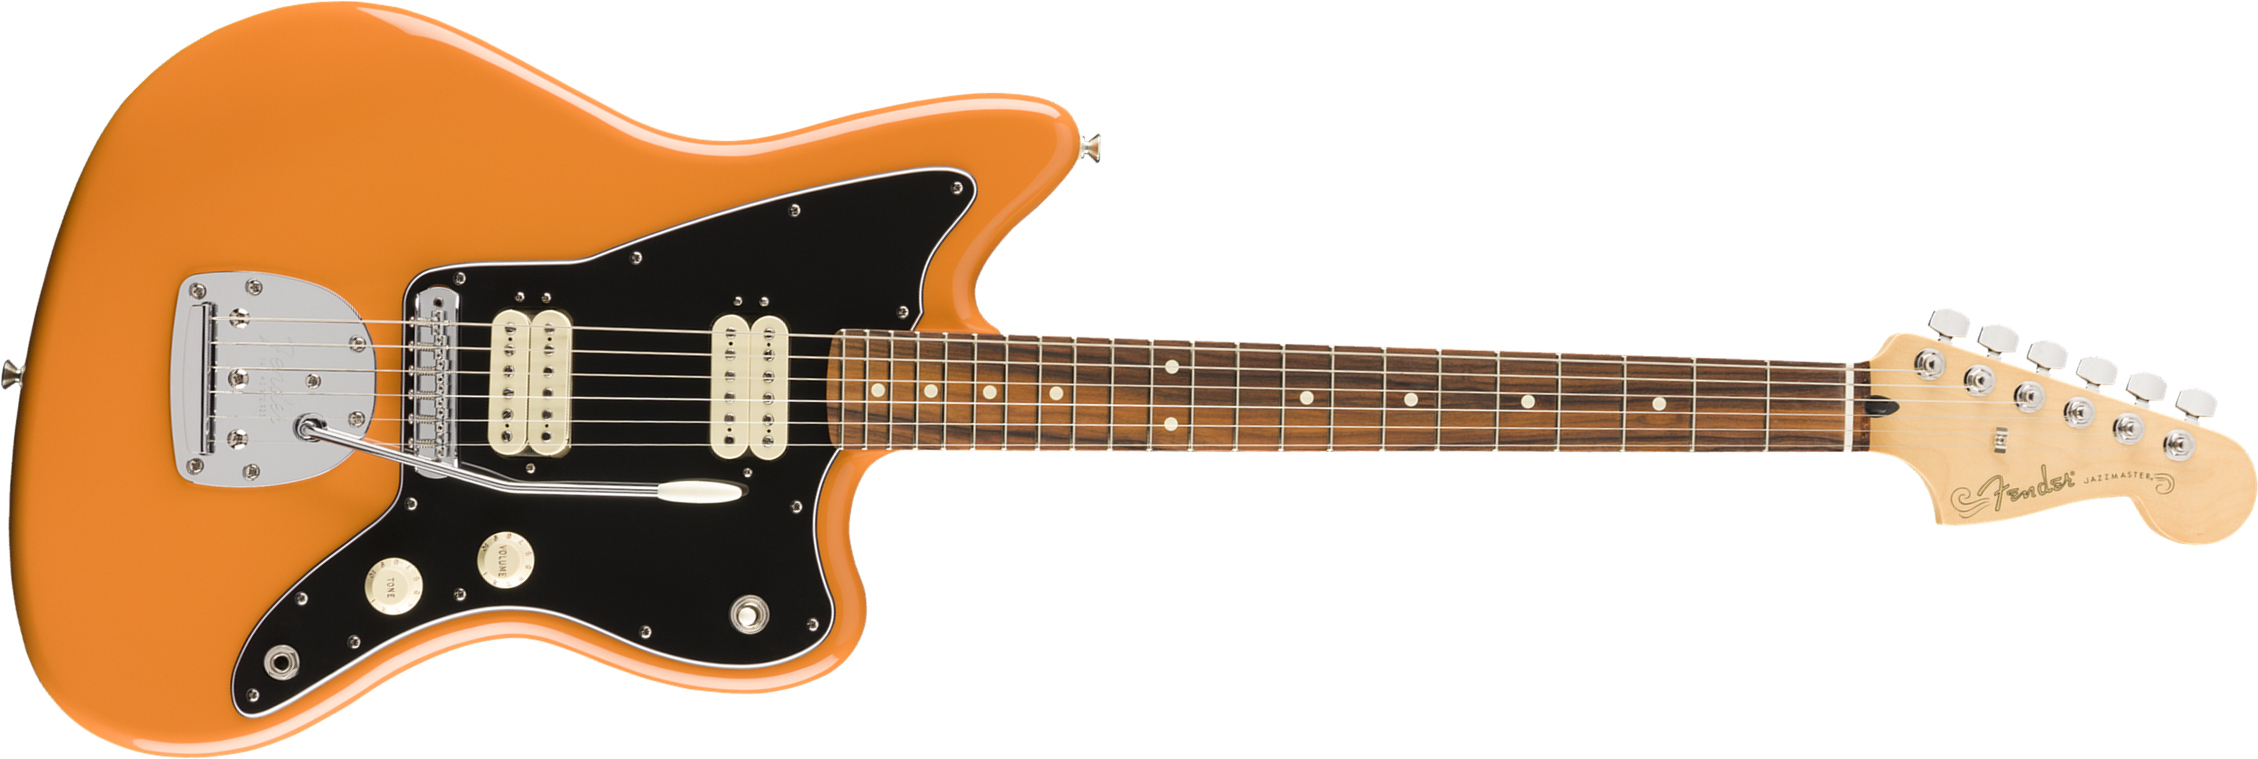 Fender Jazzmaster Player Mex Hh Pf - Capri Orange - Retro-rock elektrische gitaar - Main picture